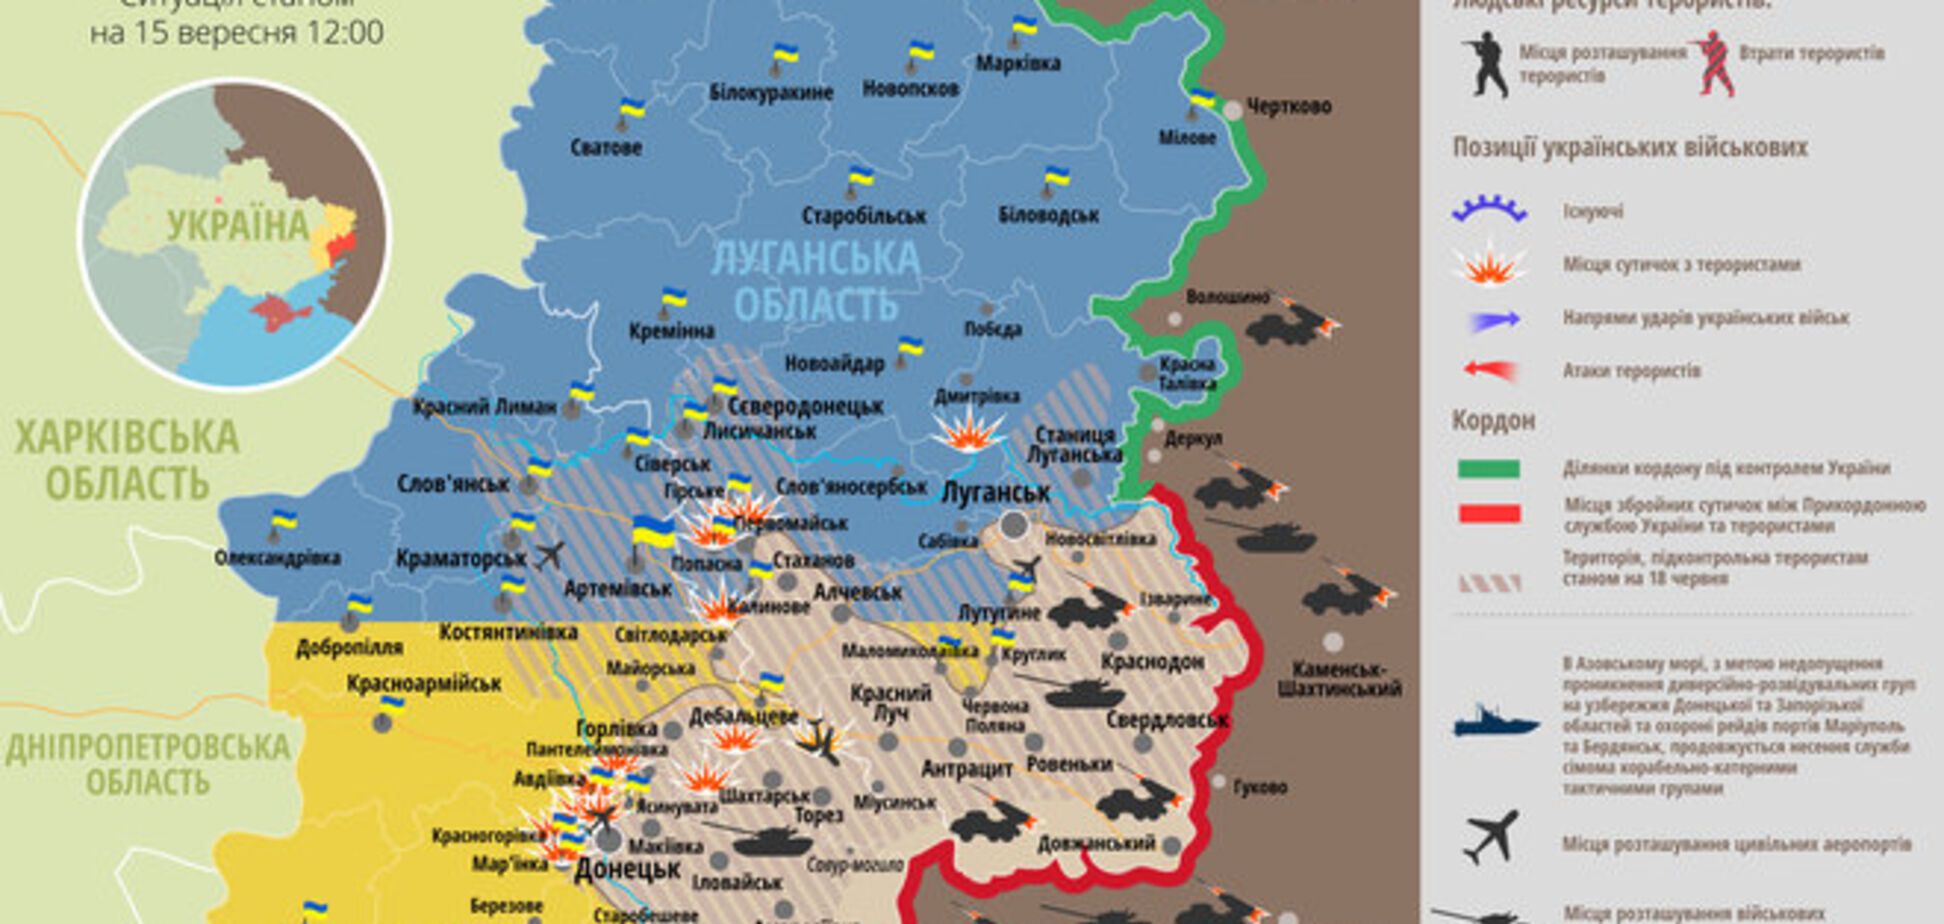 Боевики продолжают нарушать перемирие: карта АТО на 15 сентября